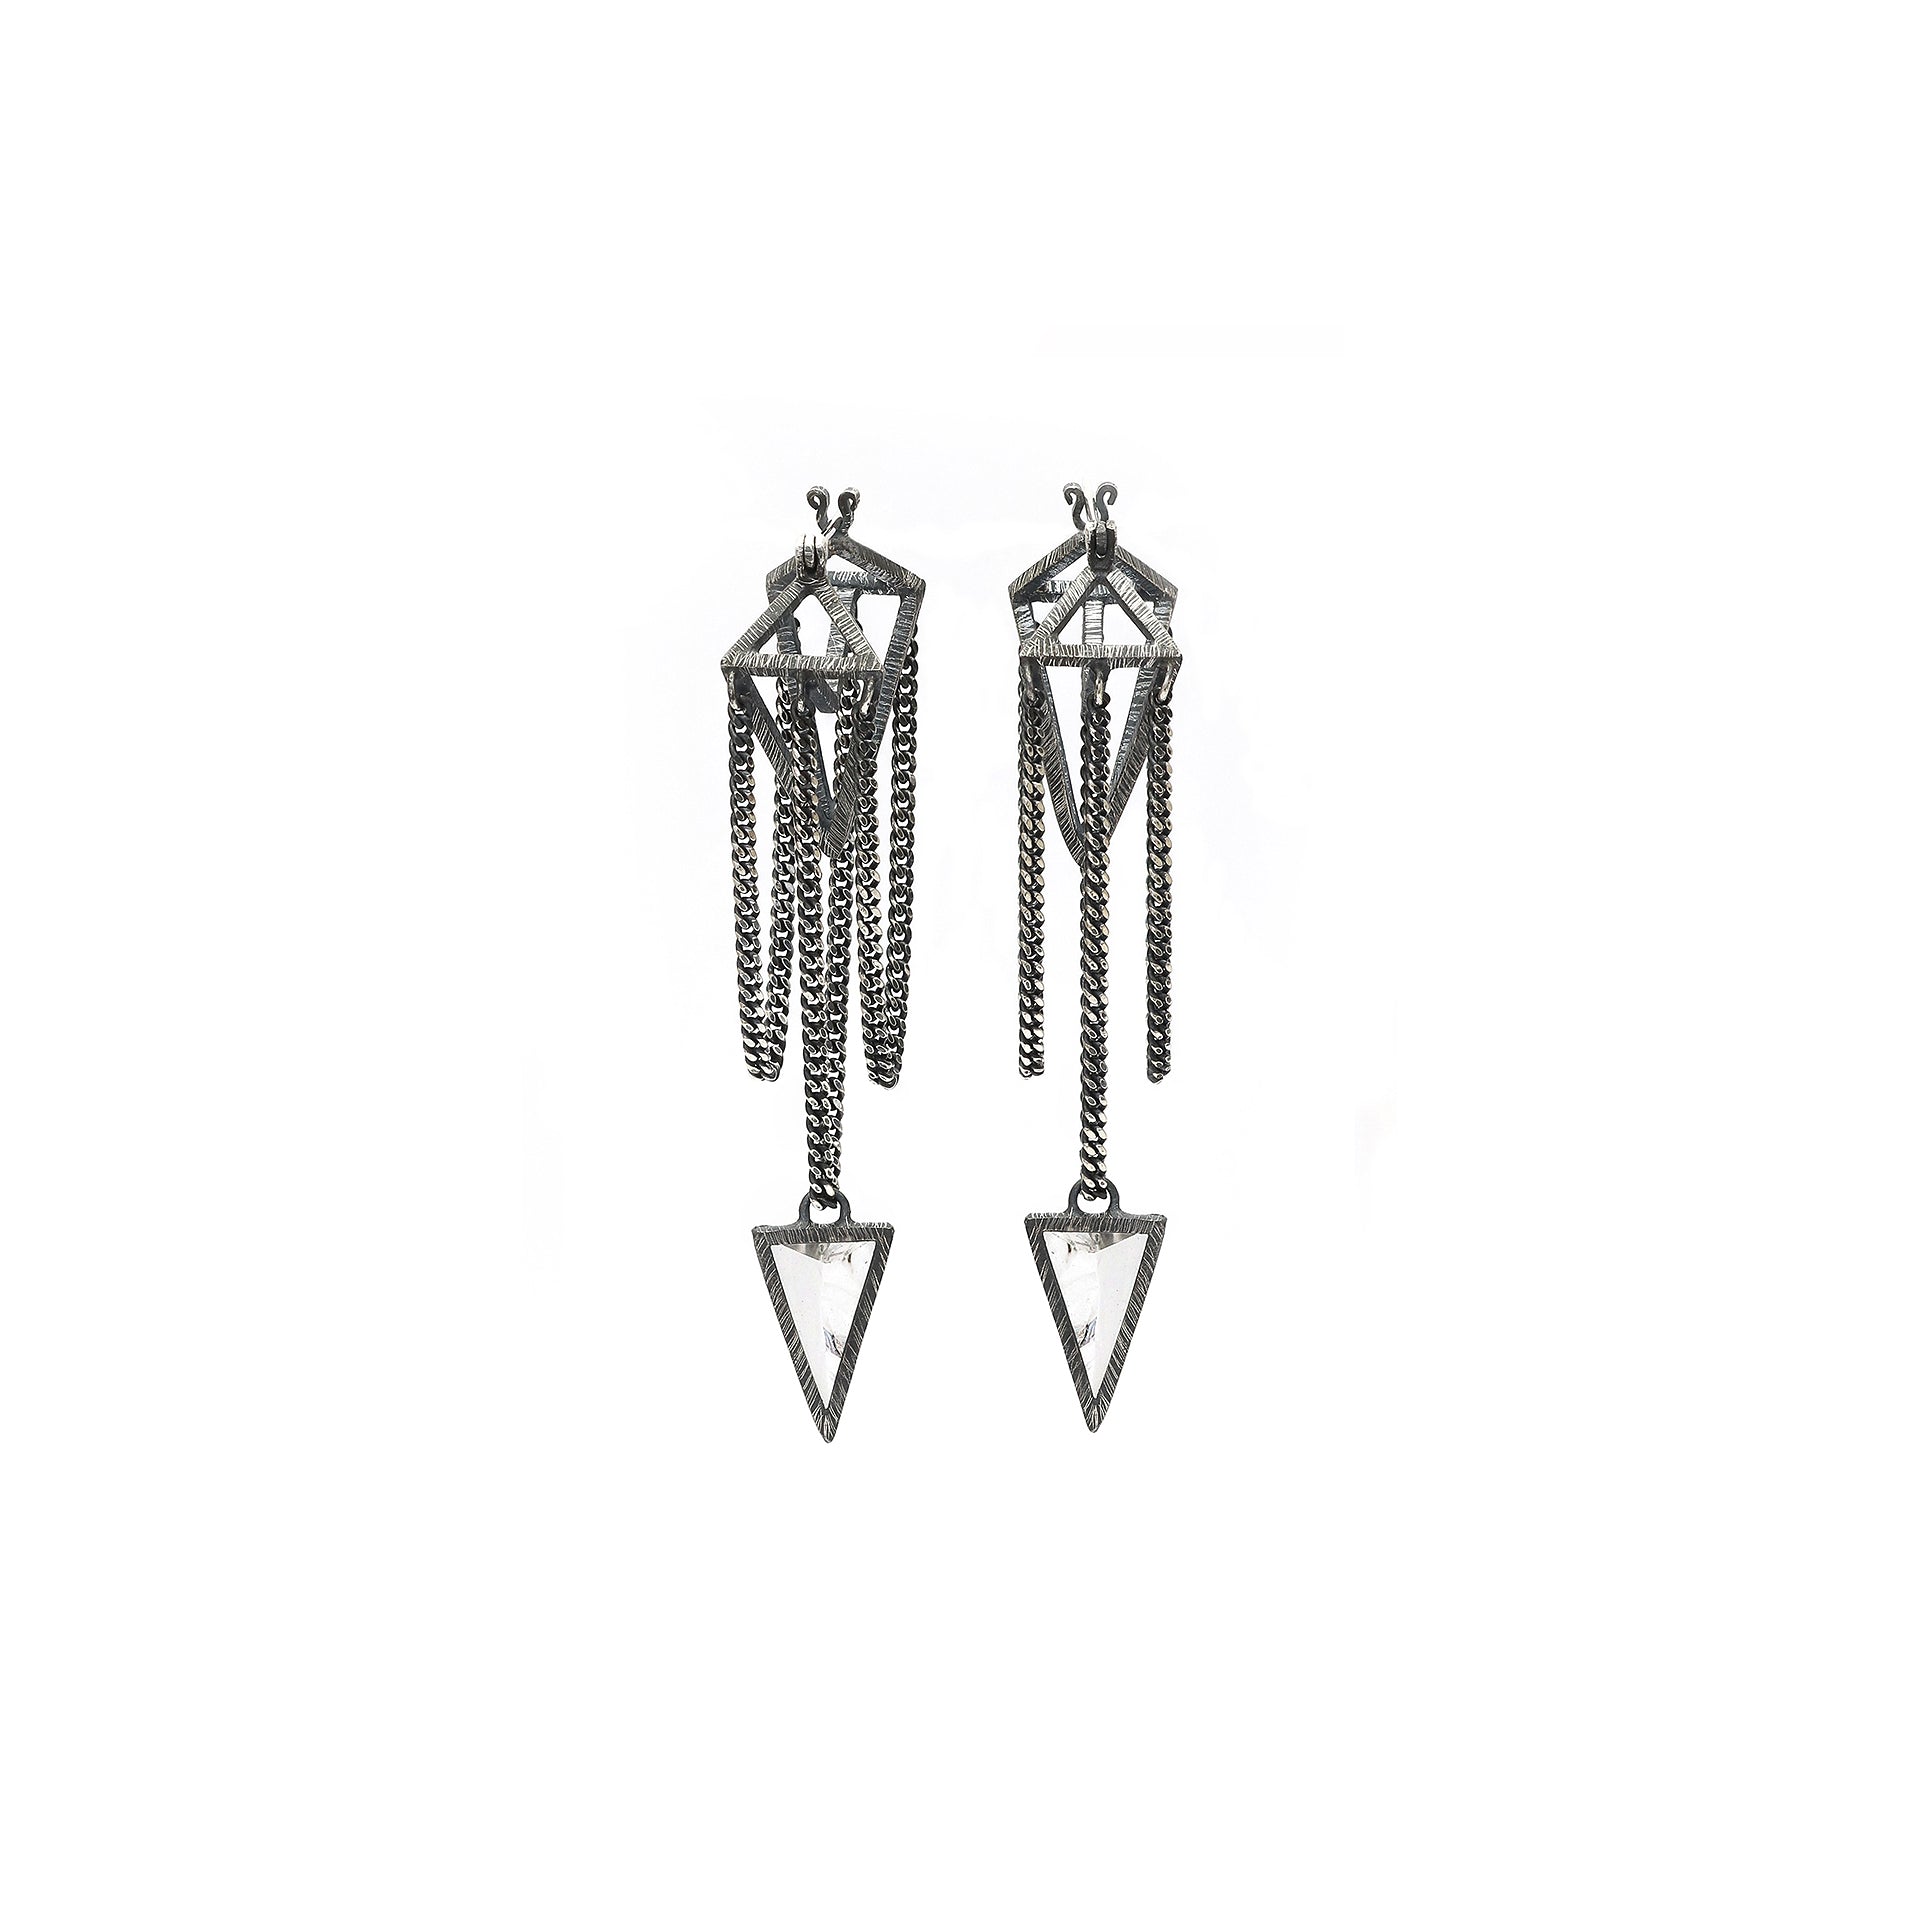 Pendulums Earrings